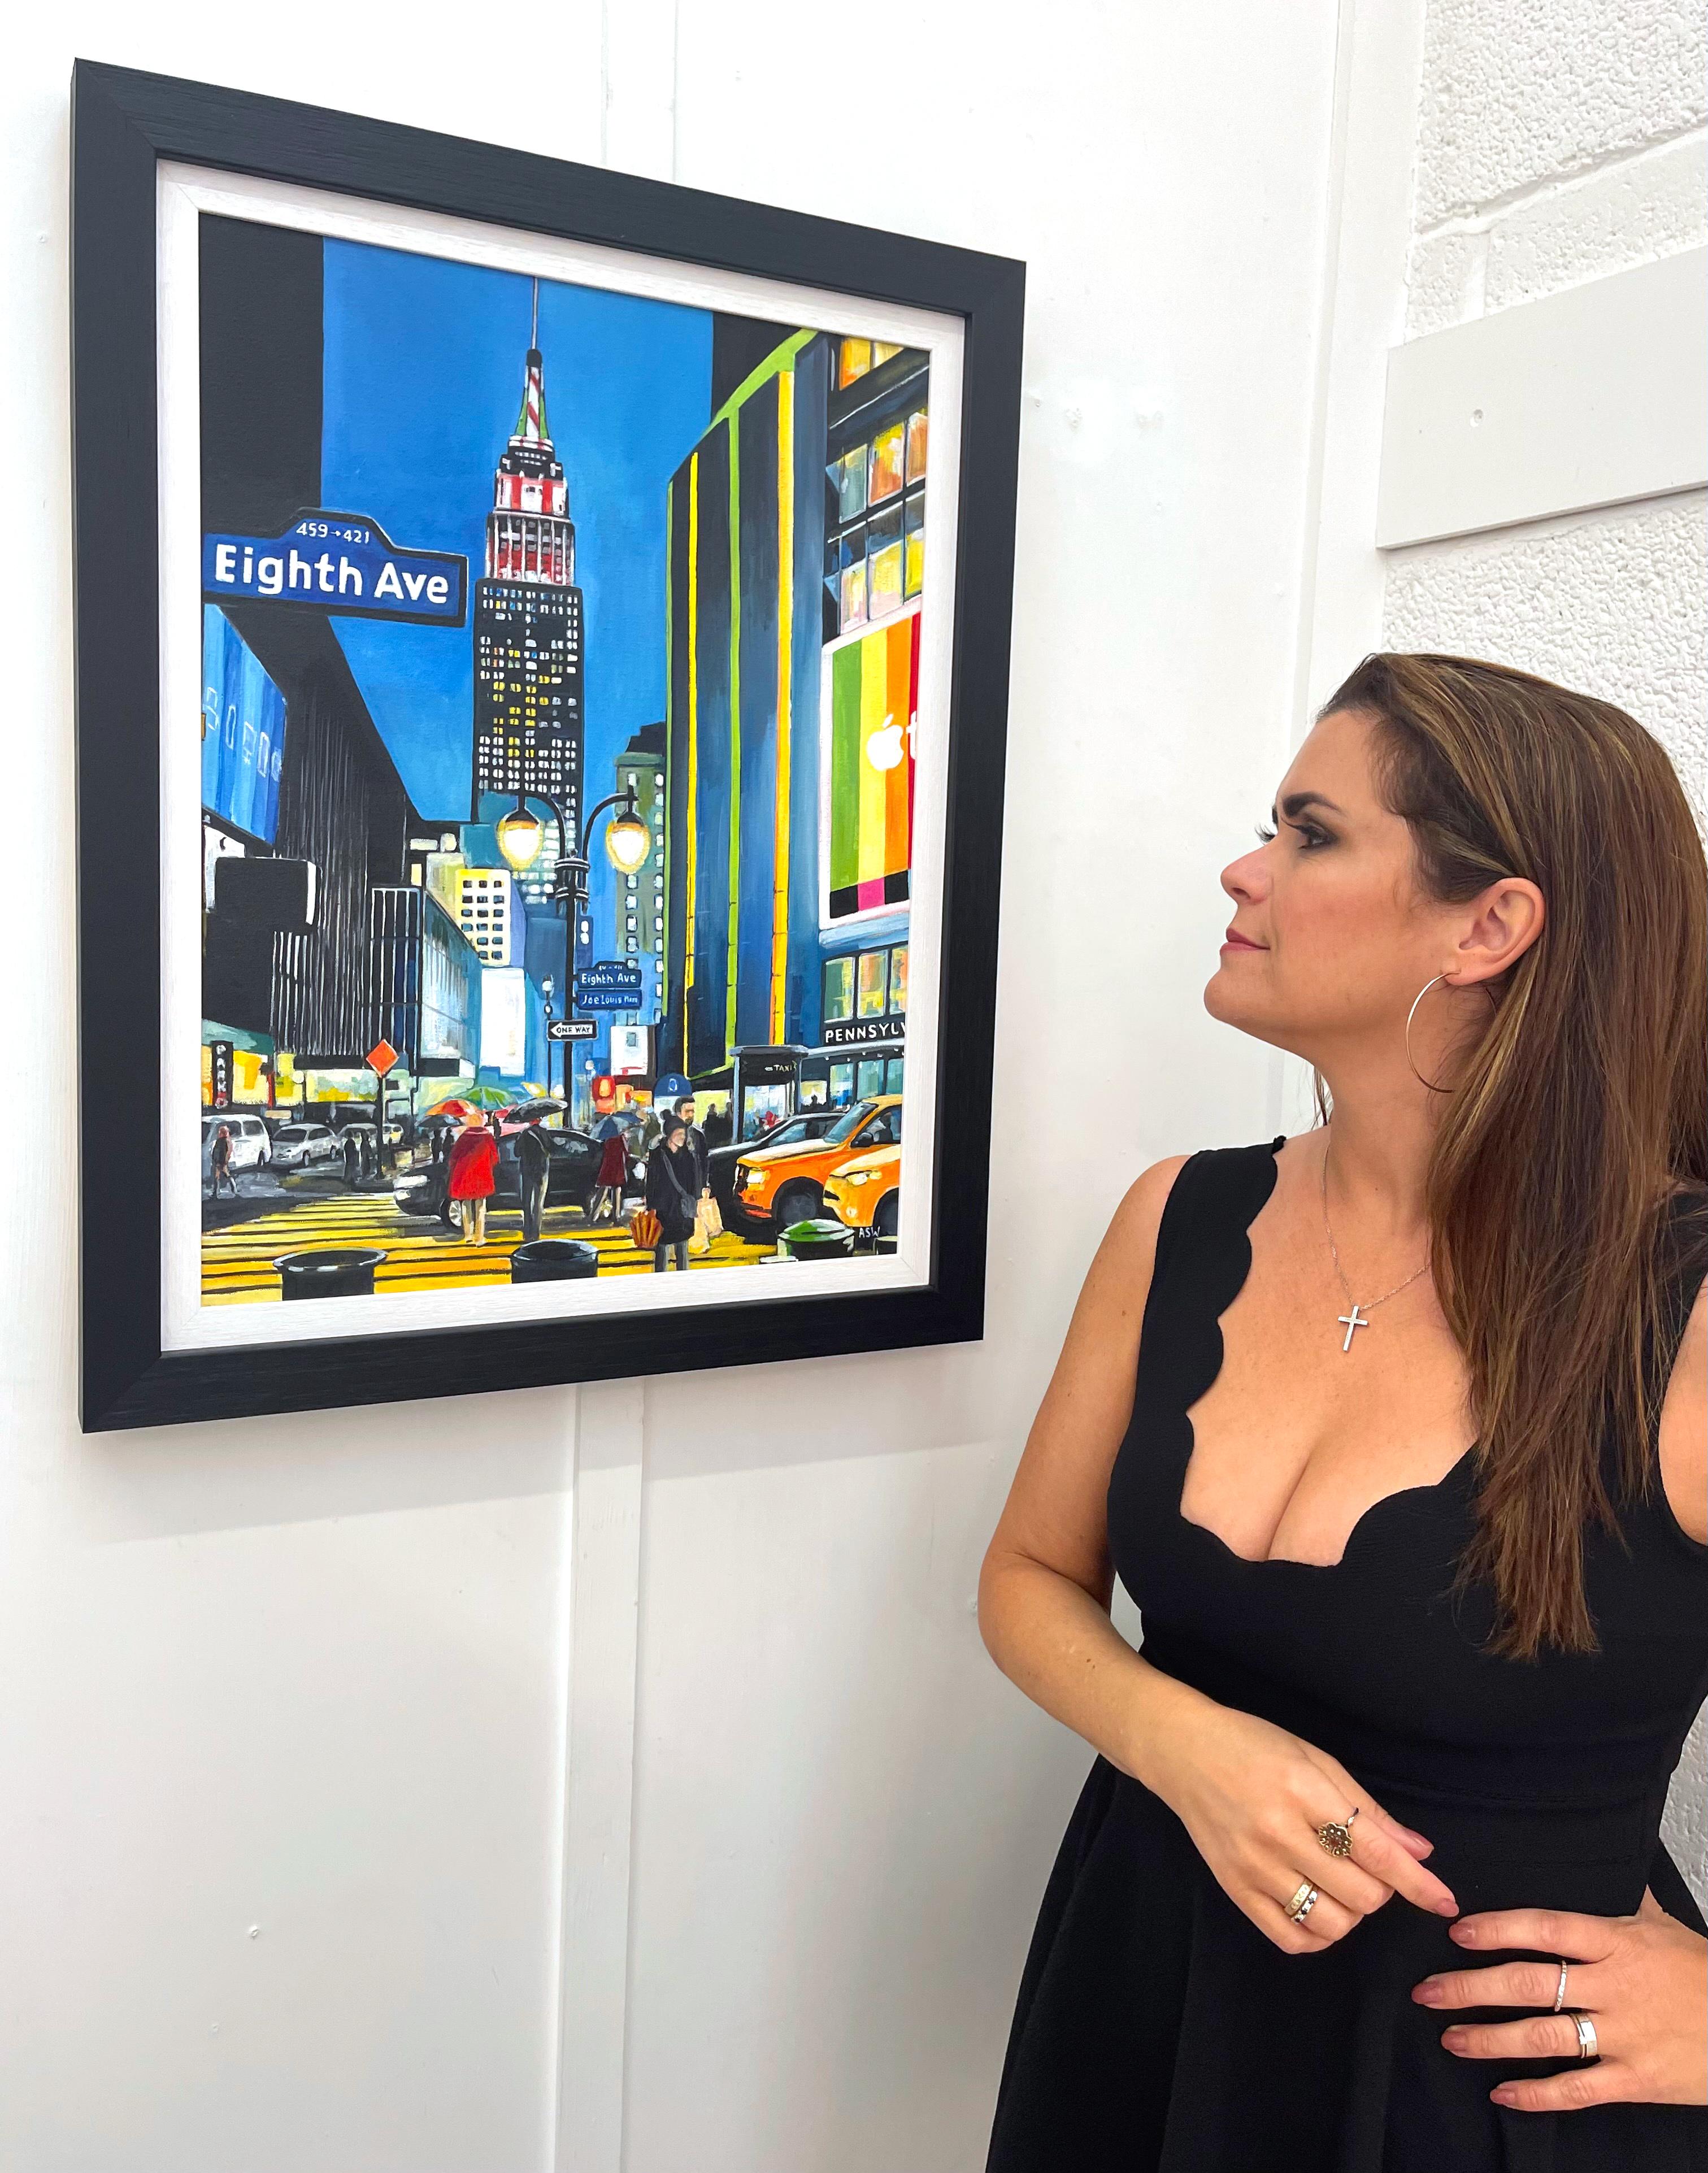 Empire State Building Eighth Avenue, New York City, von zeitgenössischem britischen Künstler (Young British Artists (YBA)), Painting, von Angela Wakefield